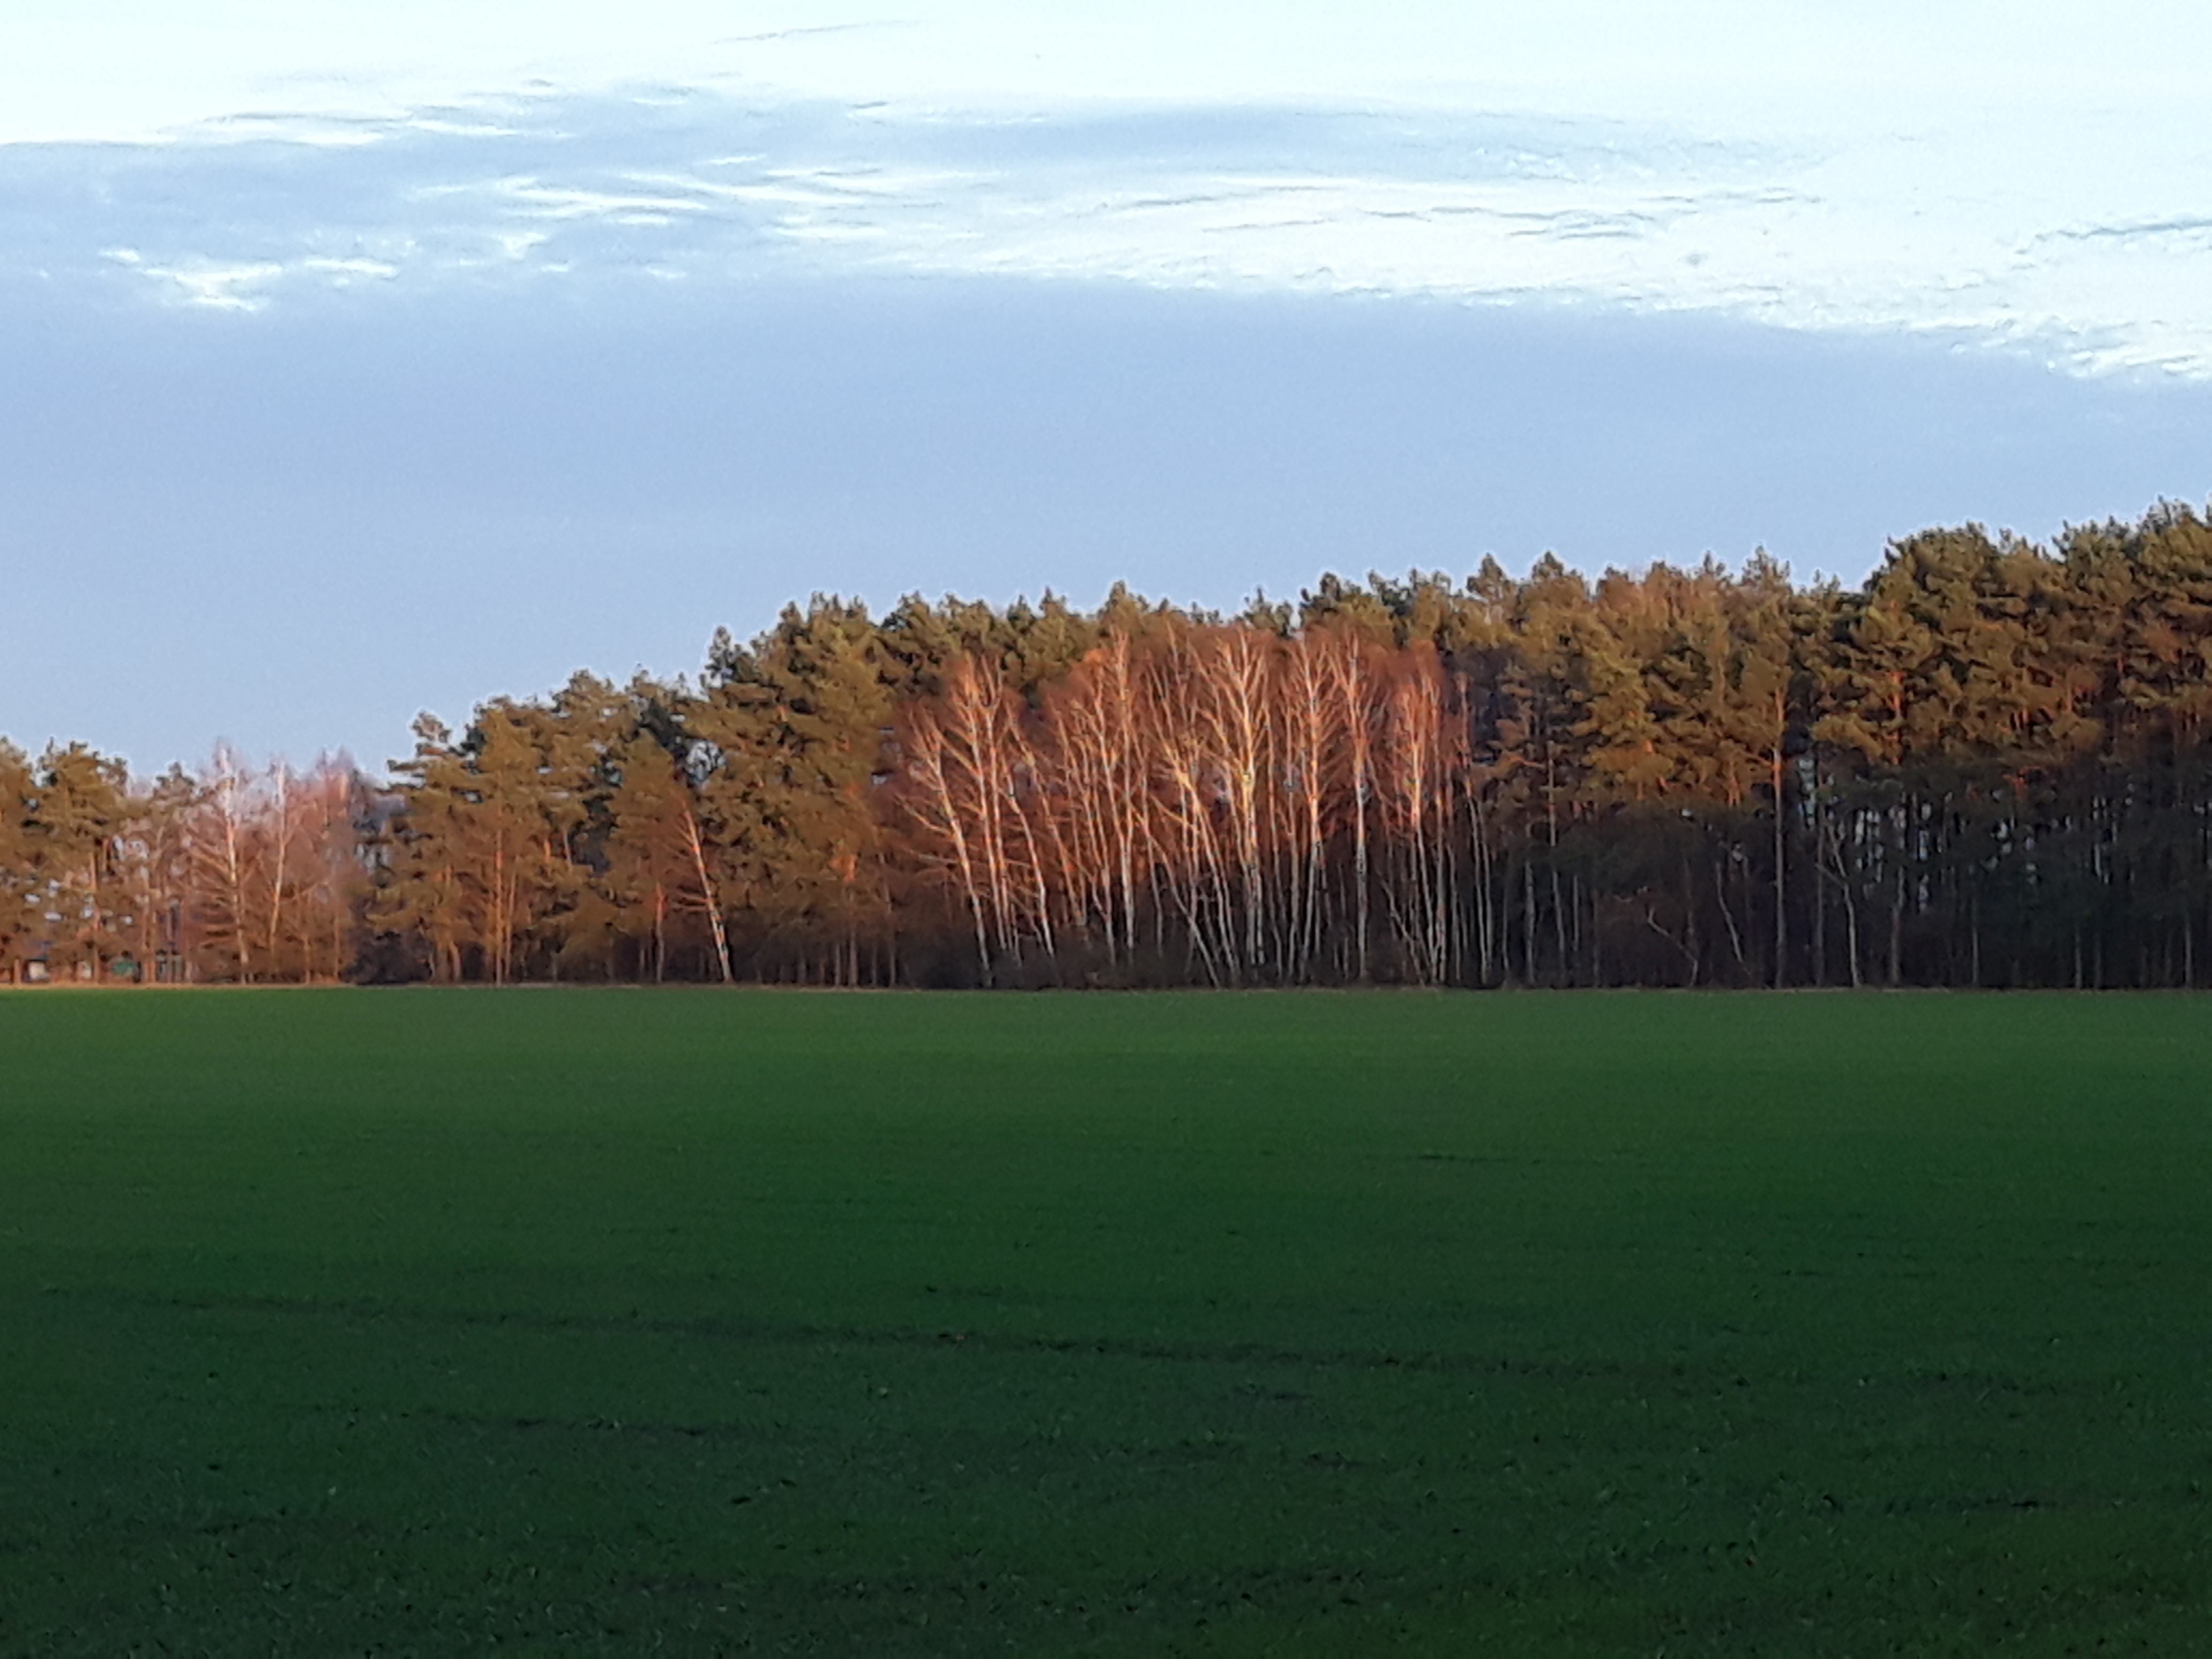 Zdjęcie przedstawiające las w jesiennych kolorach na tle pól.